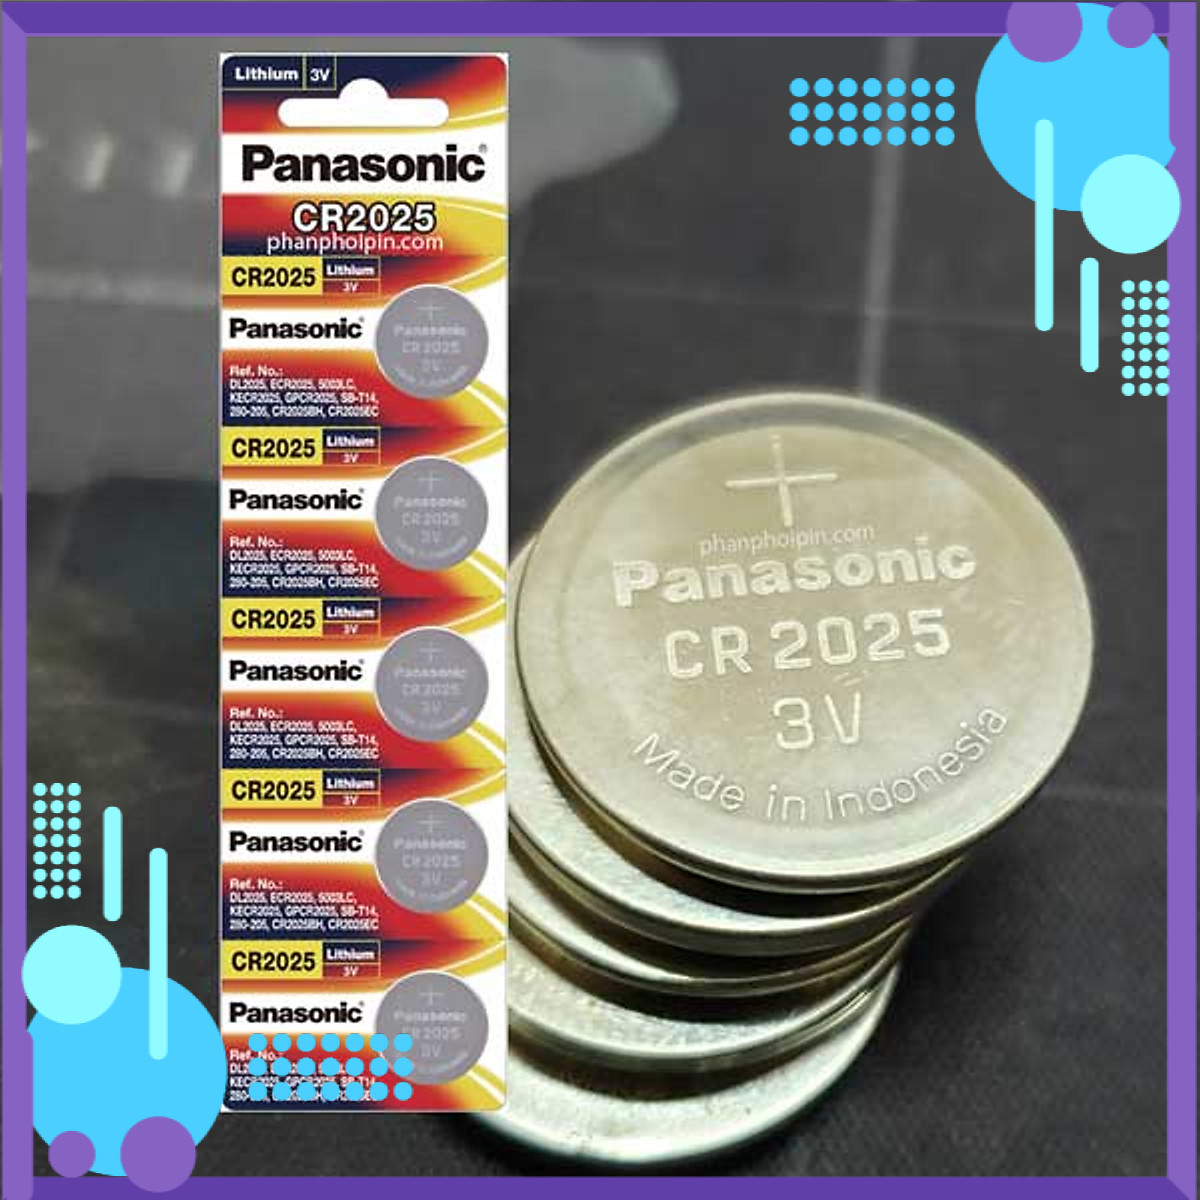 Ưu Đãi Pin nút Panasonic Lithium 3V CR-2025 x01 vỉ (Hàng chính hãng) Tiết kiệm